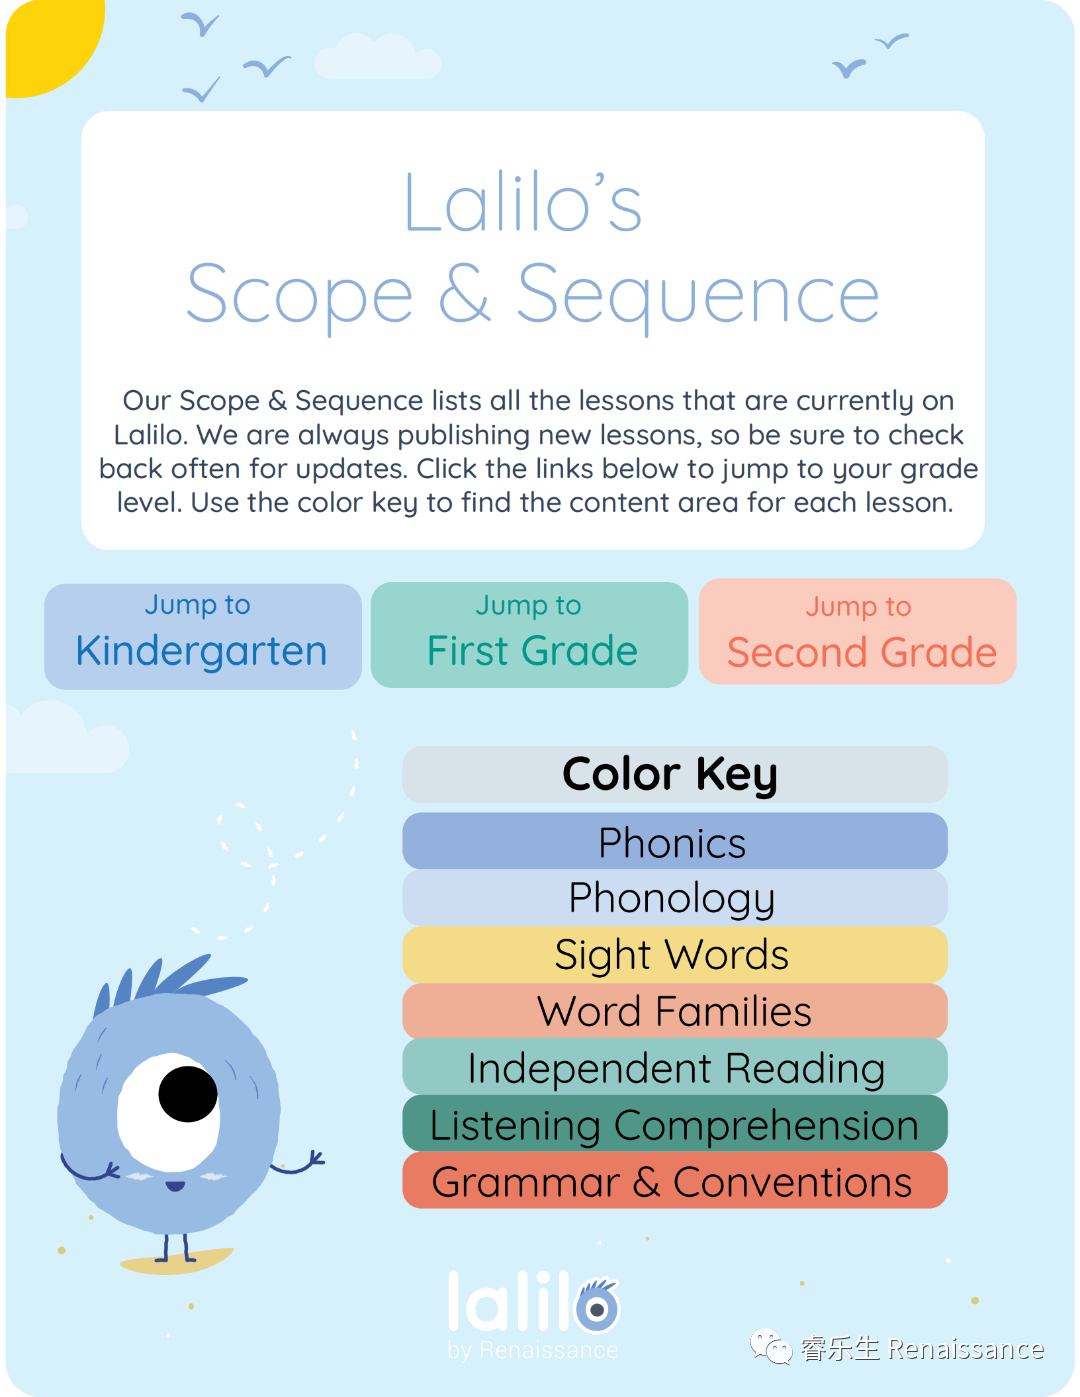 自然拼读怎么学？在线自适应读写系统“Lalilo”来了！